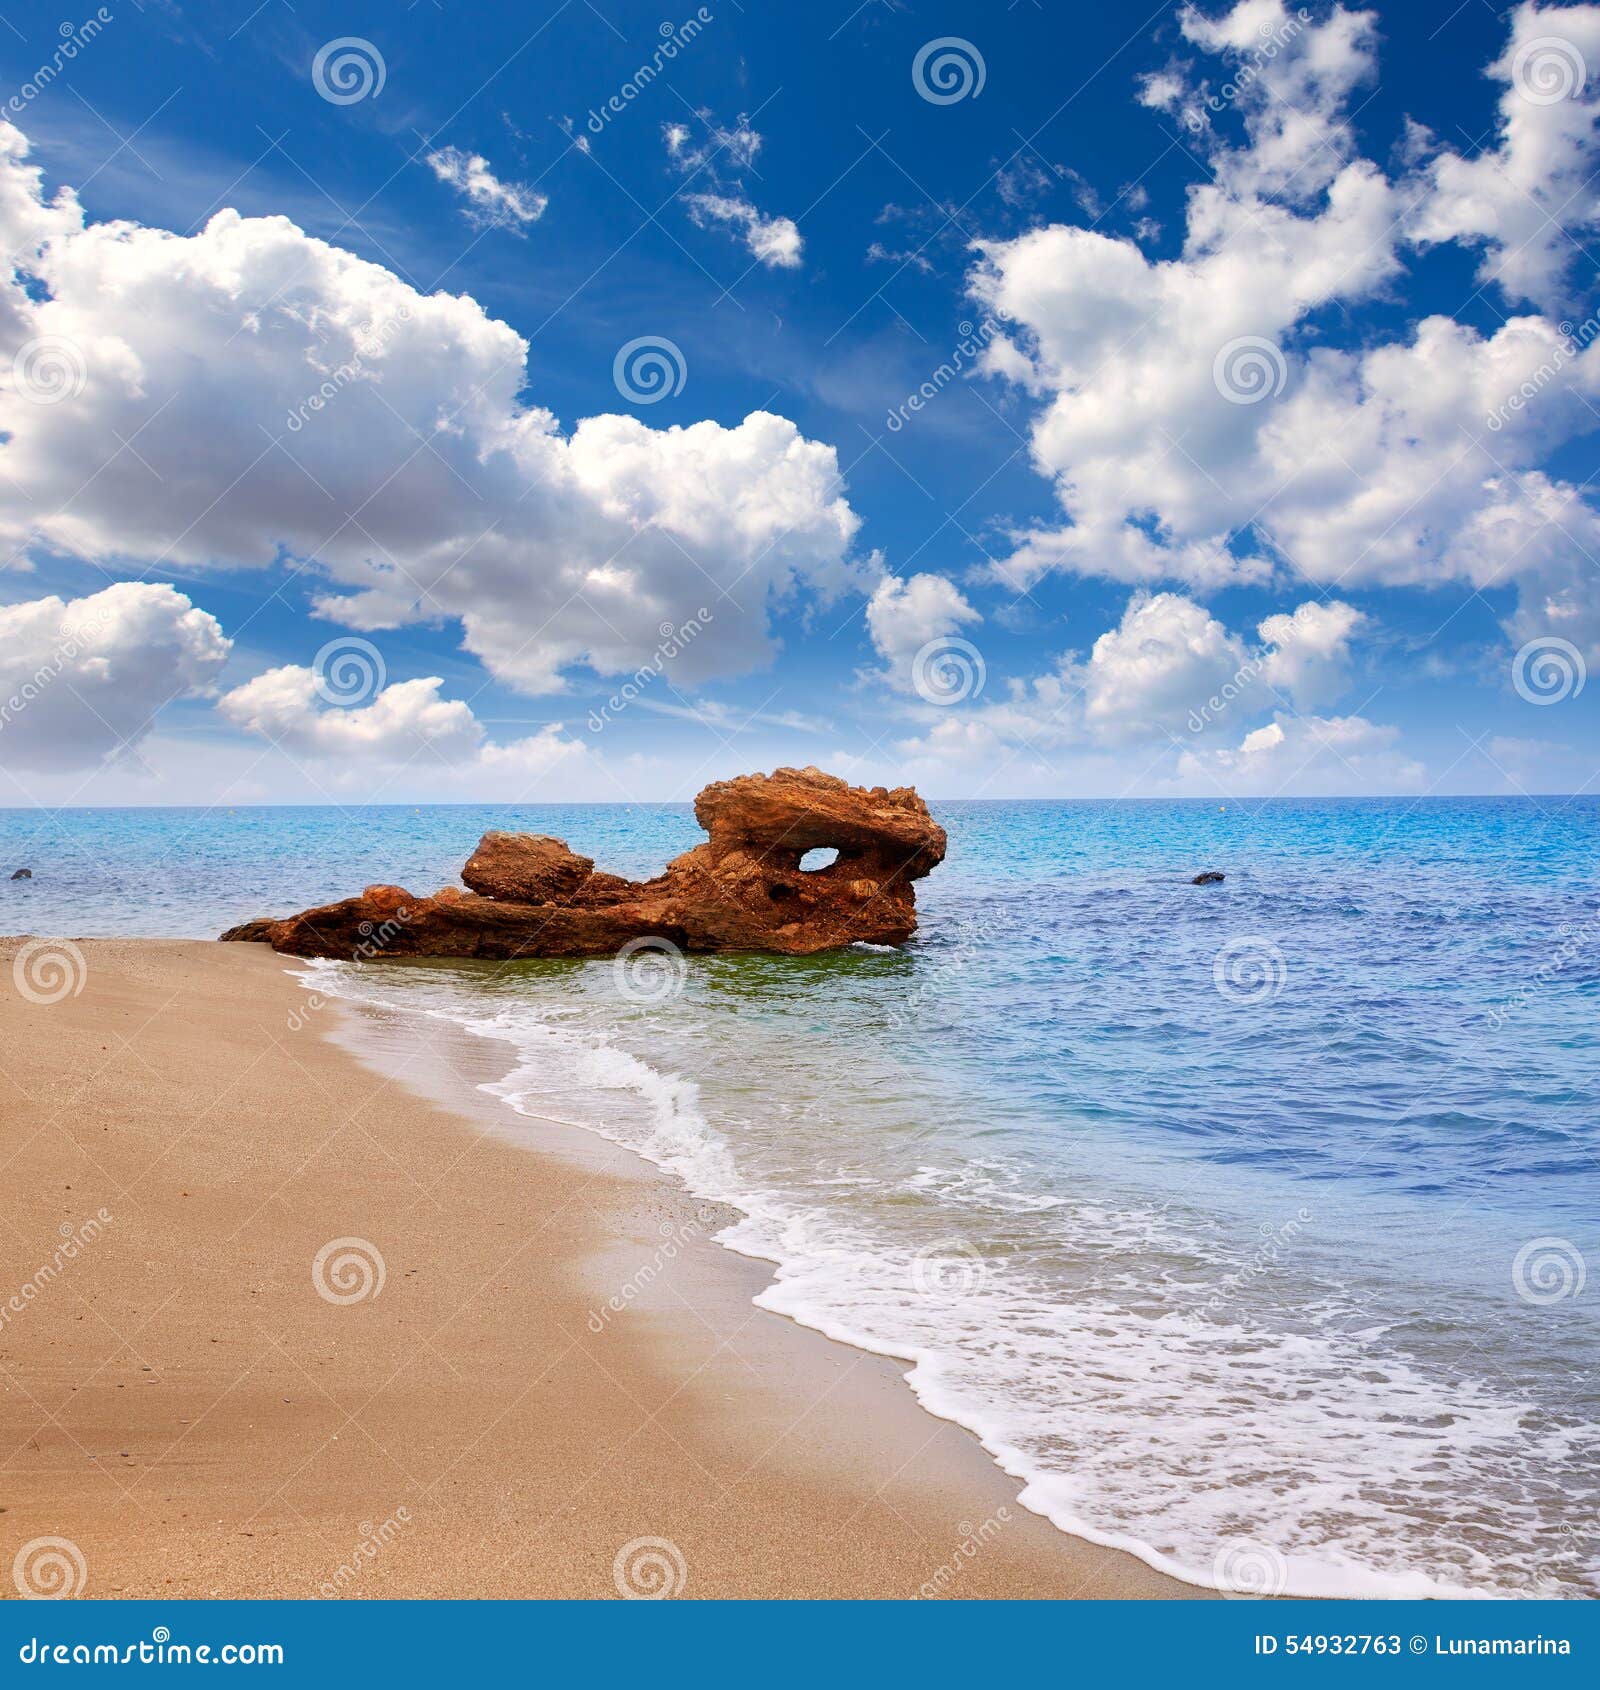 almeria mojacar beach mediterranean sea spain